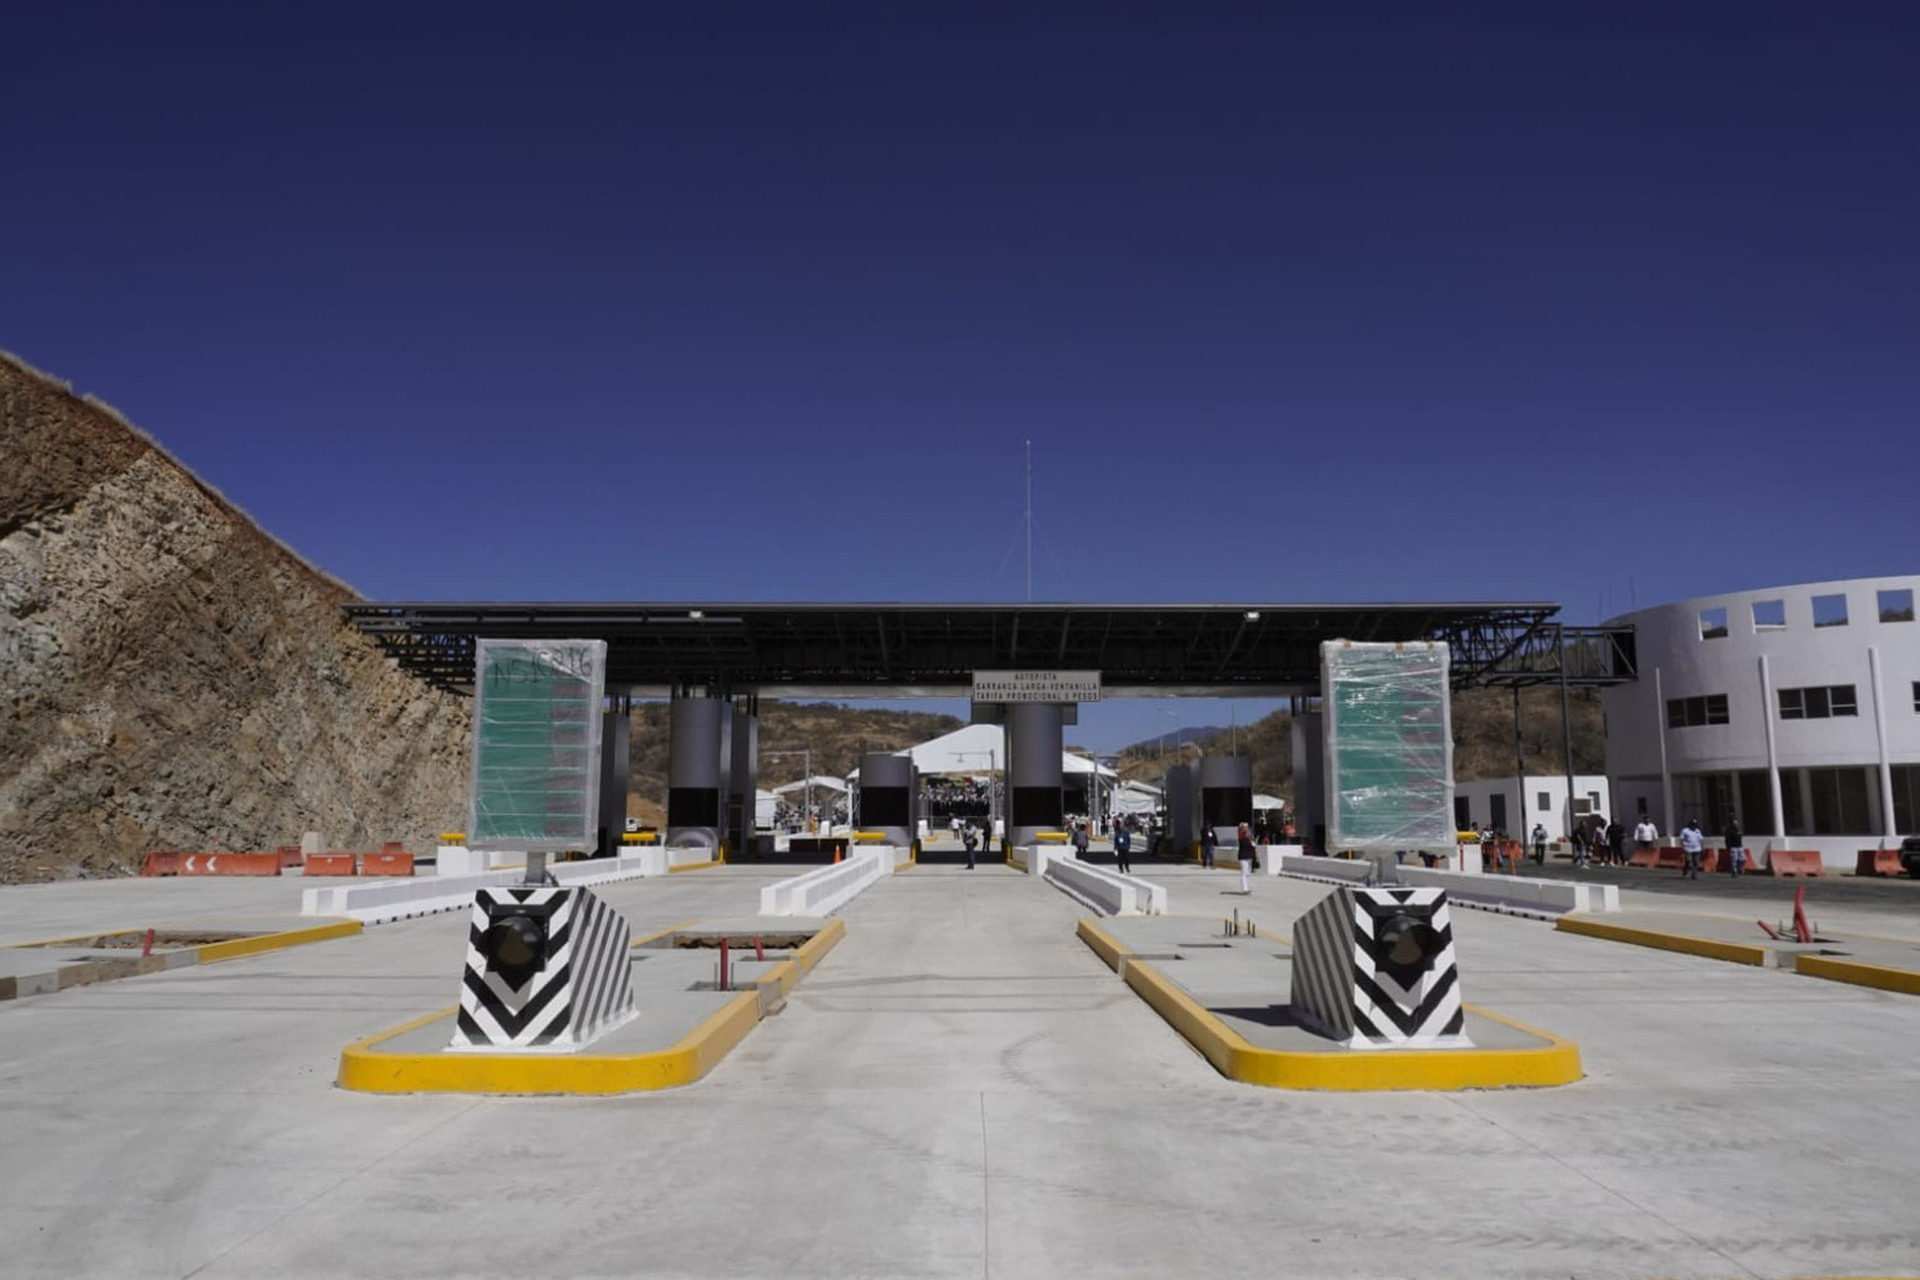 Autopista Oaxaca-Puerto Escondido: AMLO inaugura obra tras casi 15 años de construcción